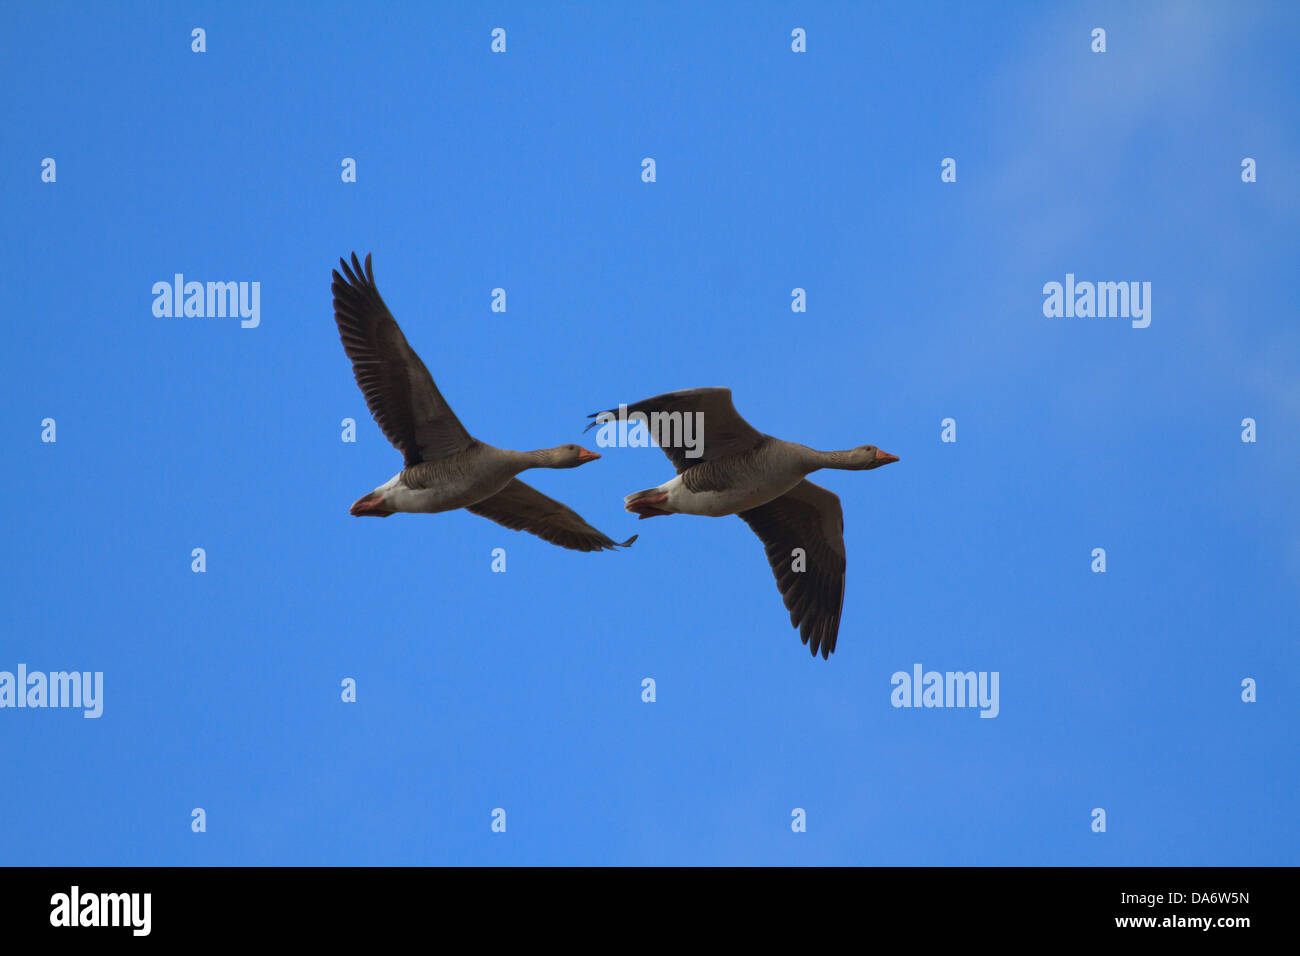 Deux oies cendrées (Anser anser) voler à travers un ciel bleu Banque D'Images